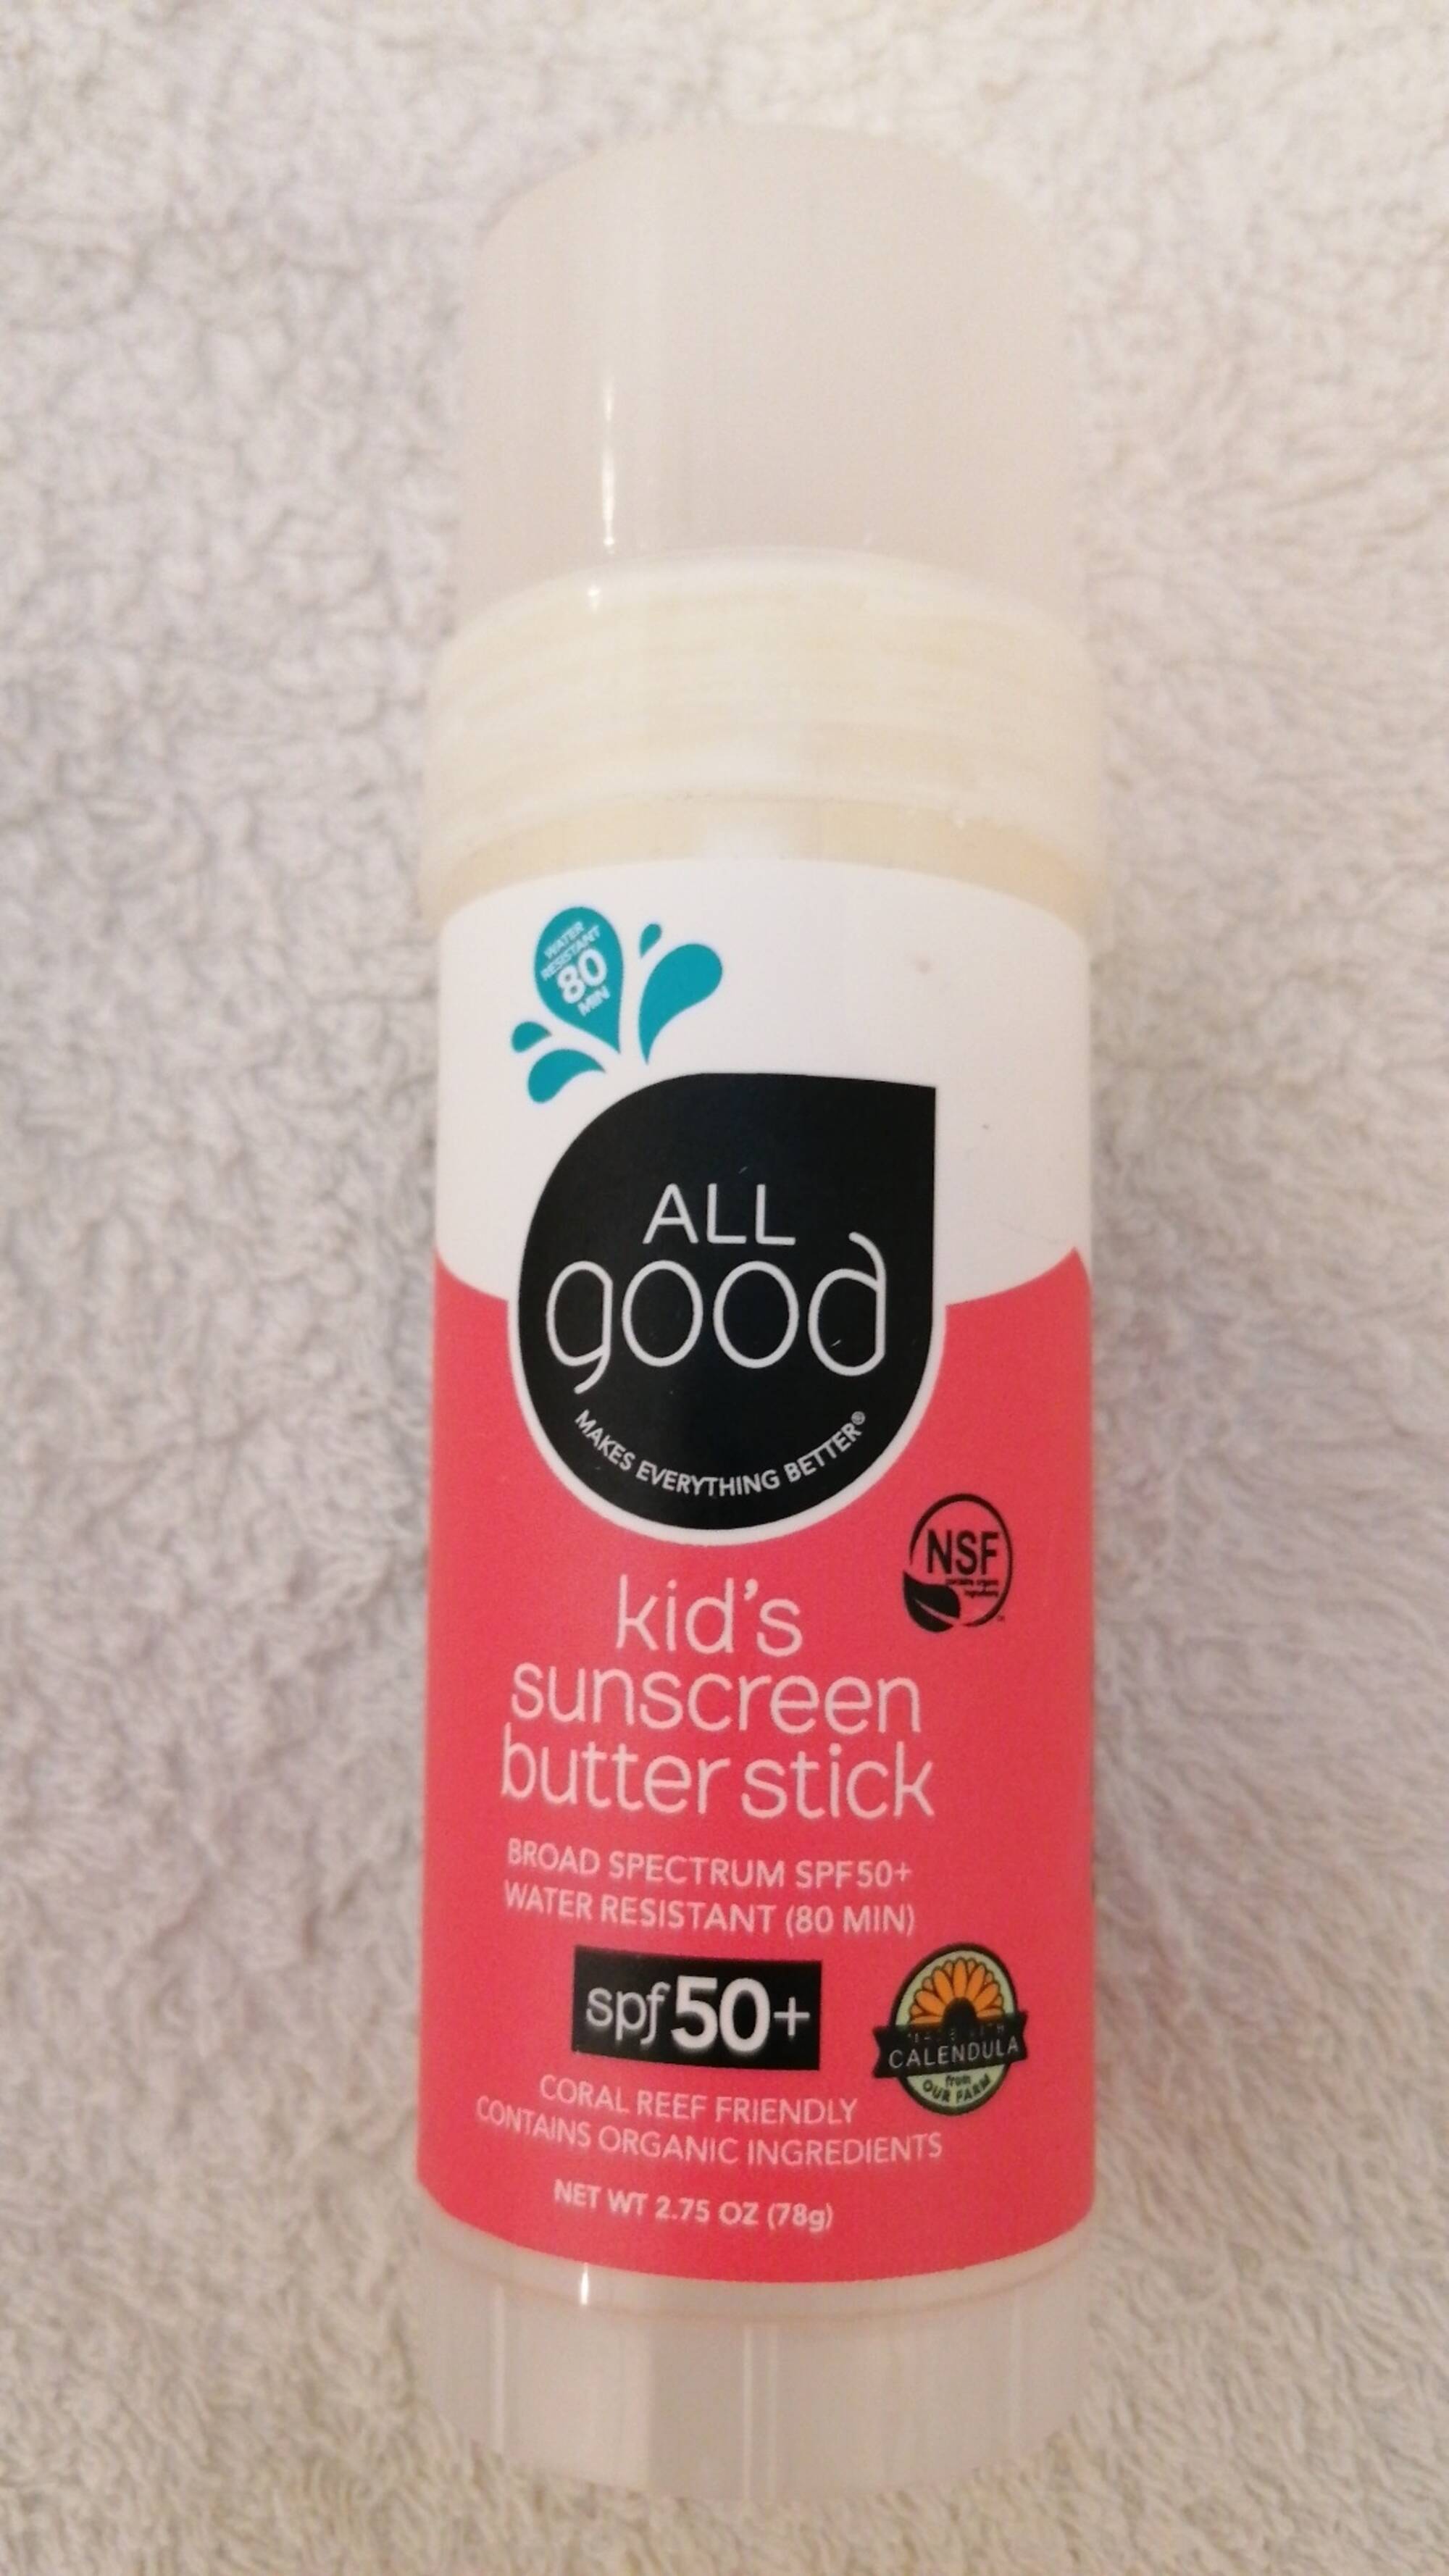 ALL GOOD - Kid's sunscreen butter stick SPF 50+